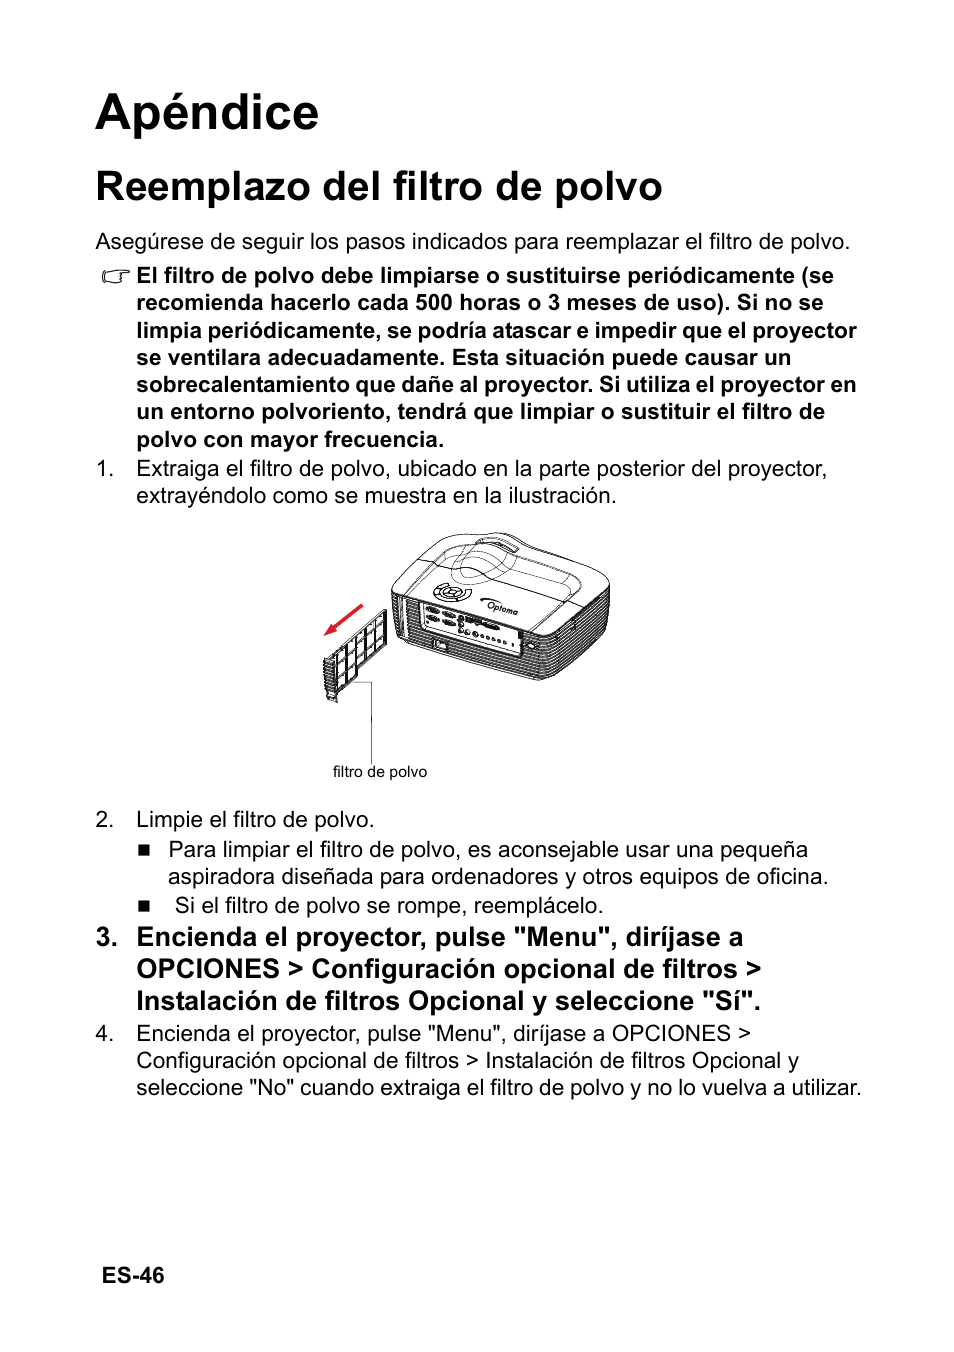 Apéndice, Reemplazo del filtro de polvo | Optoma HD151X Manual del usuario | Página 46 / 66